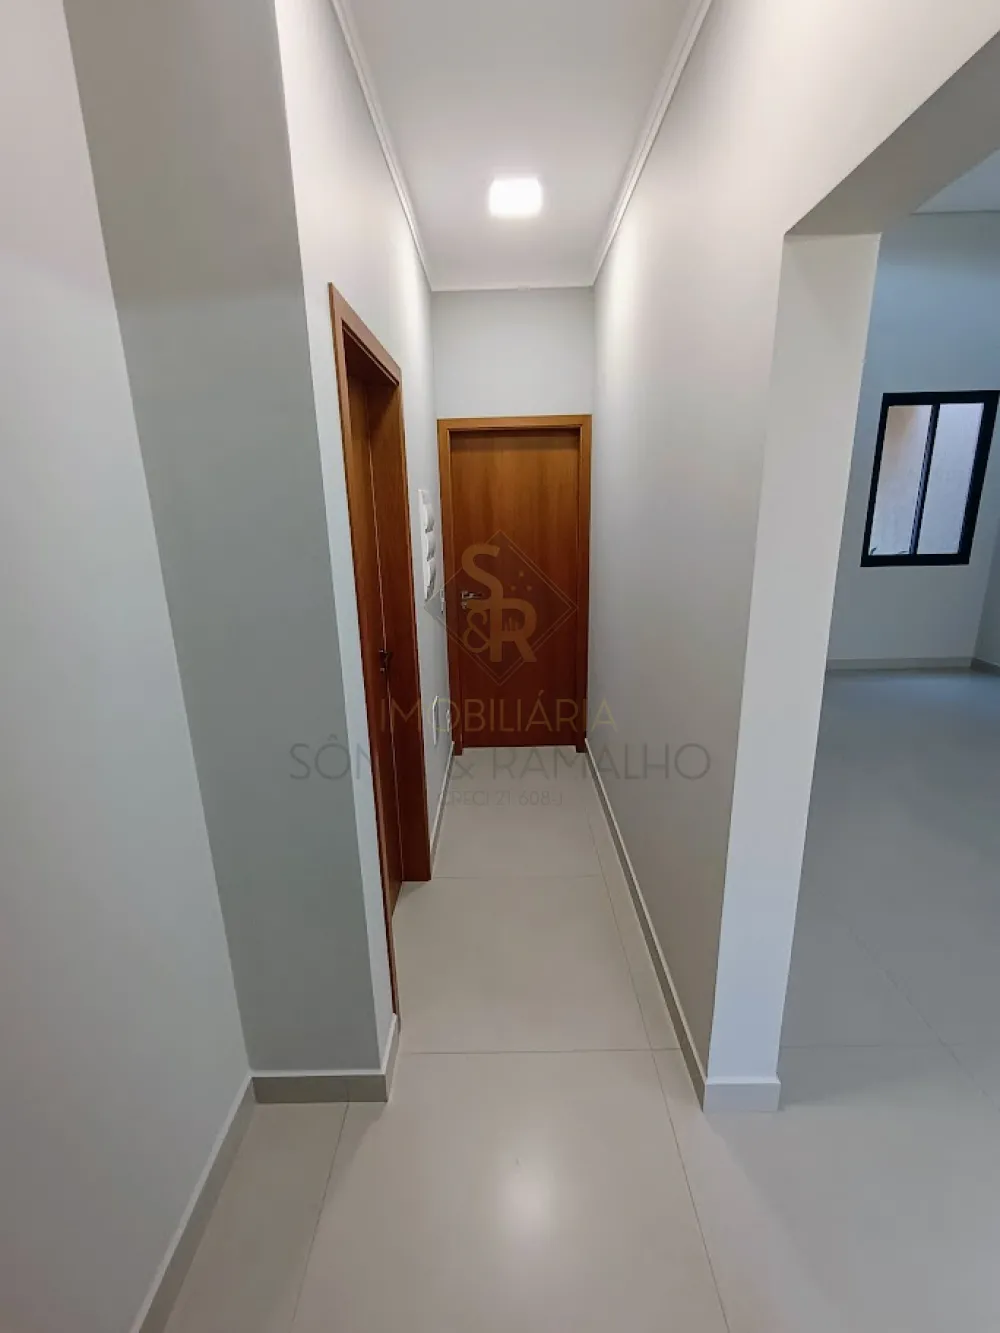 Comprar Casas Residenciais / Condomínio em Ribeirão Preto R$ 1.050.000,00 - Foto 14